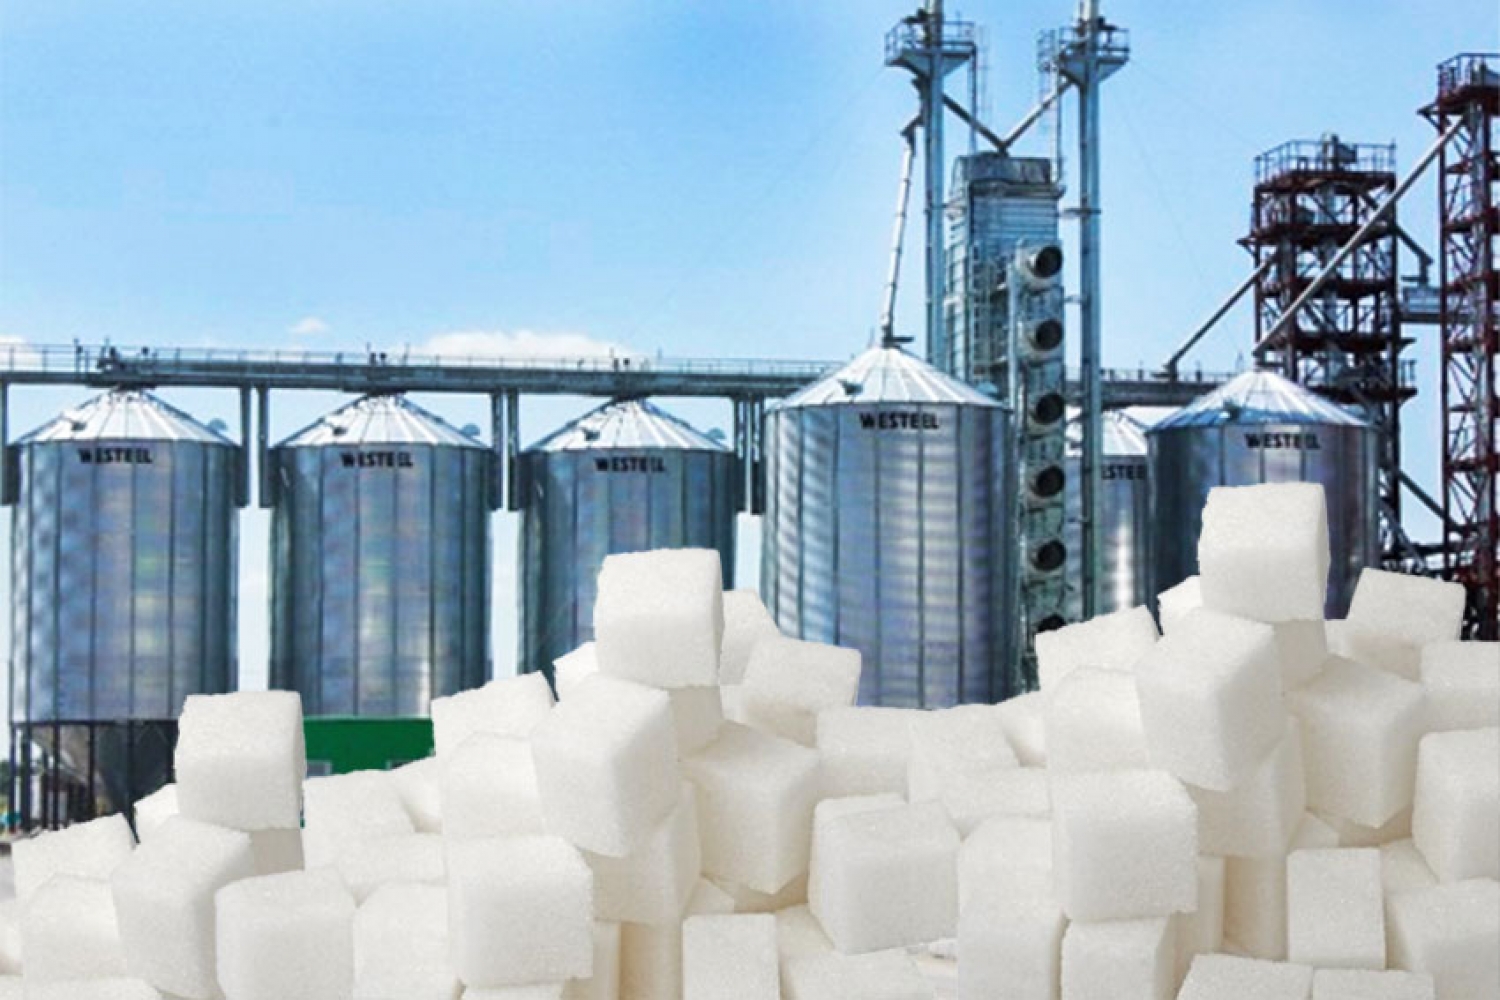 2 сахарные завода Кубани обвиняются в картельном сговоре и безосновательном повышении цены на свою продукцию более чем на 30%